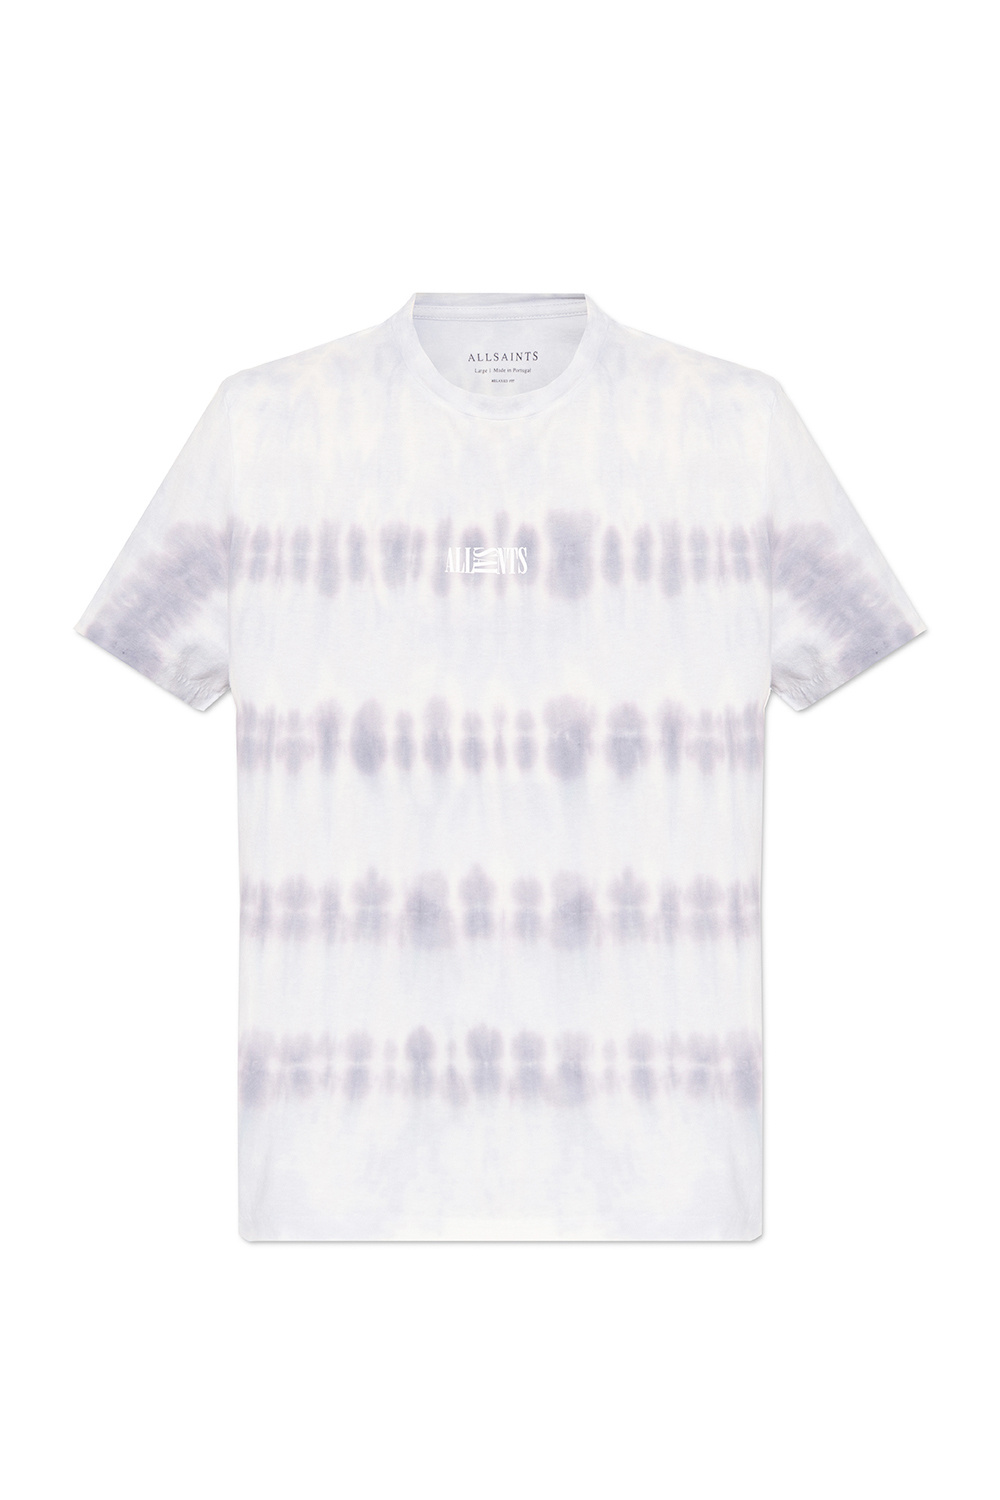 AllSaints ‘Cloud’ T-shirt